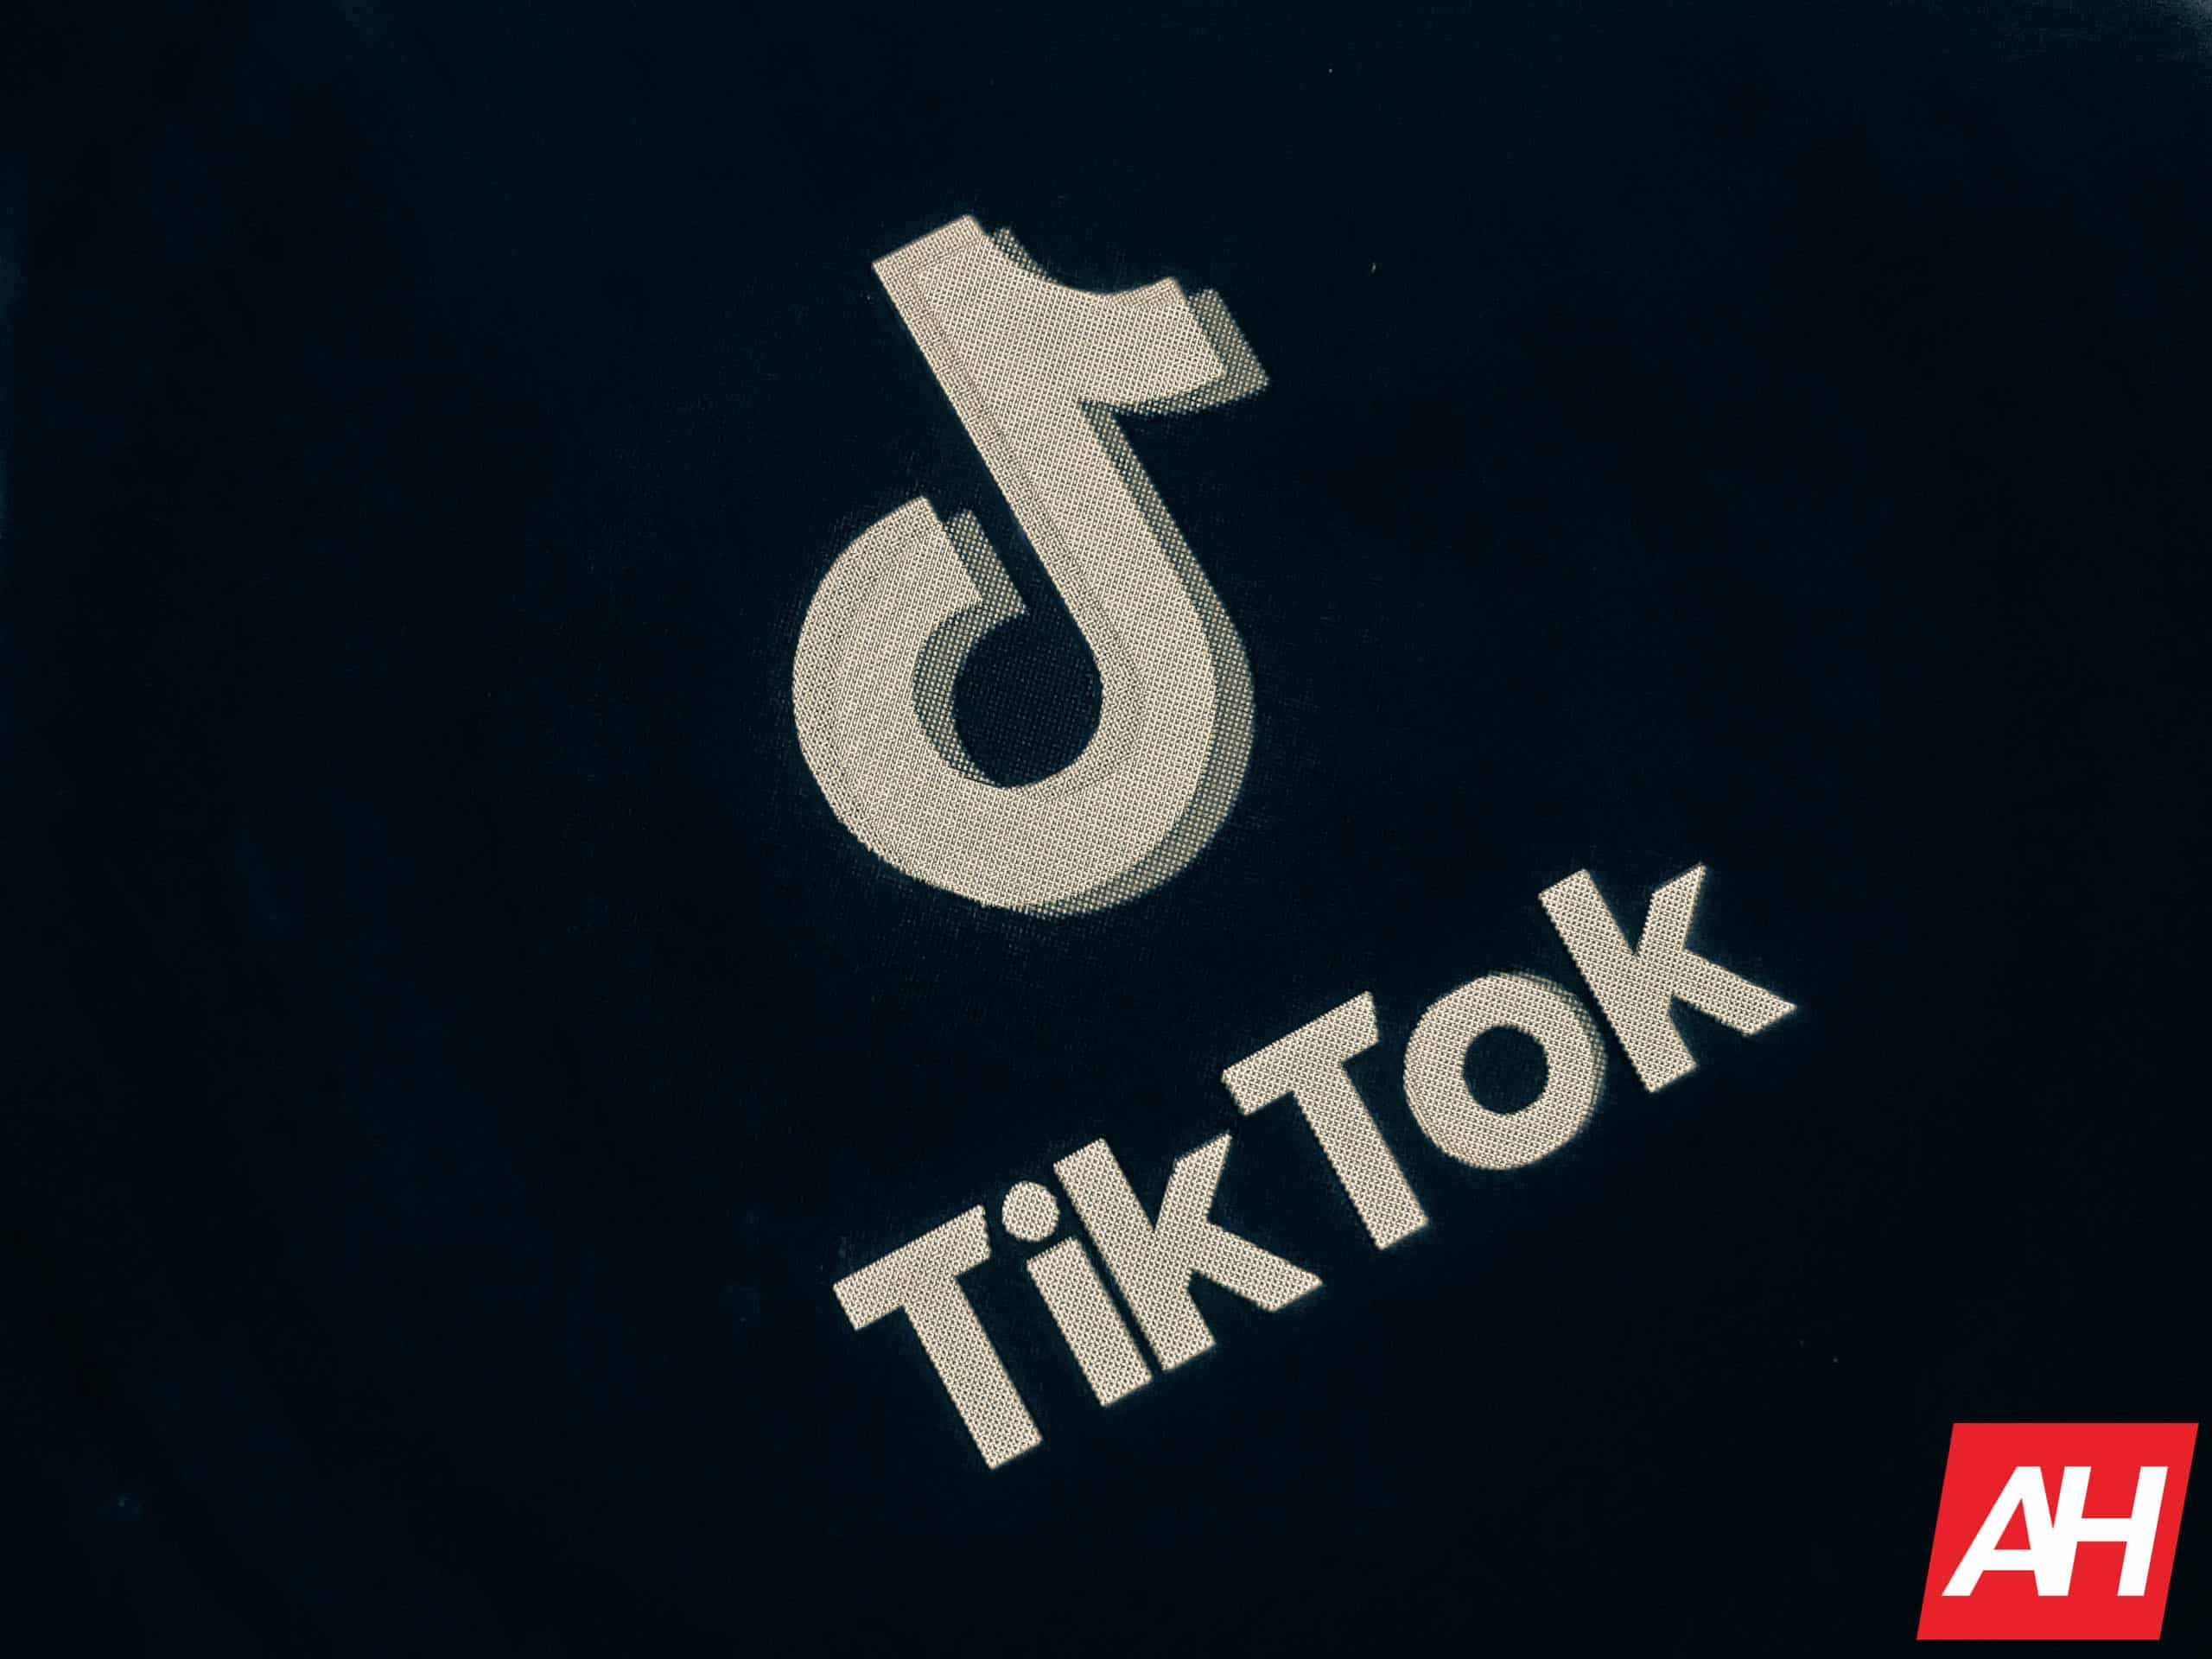 Iowa demandó a TikTok alegando contenido inapropiado